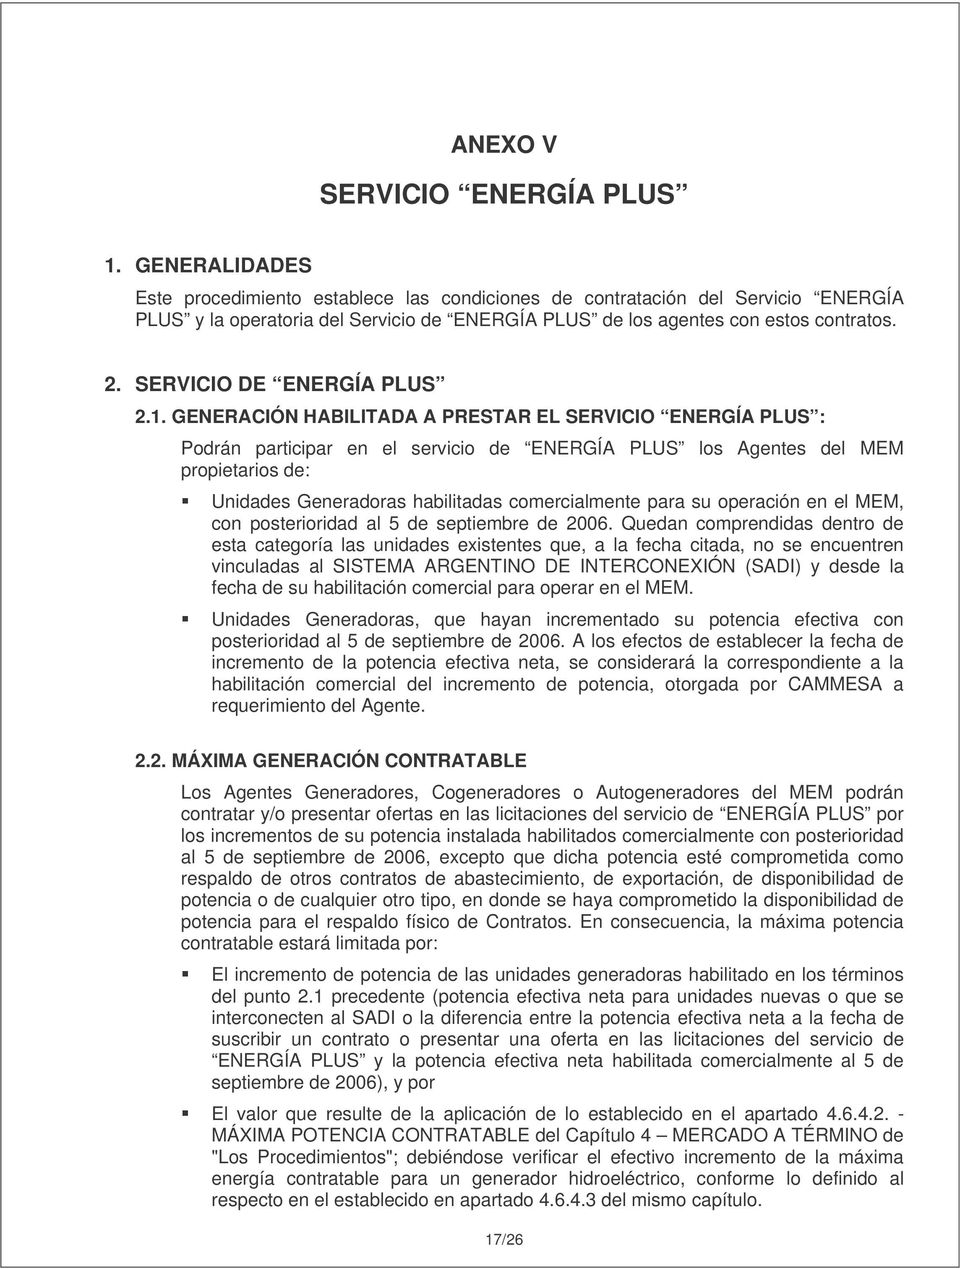 SERVICIO DE ENERGÍA PLUS 2.1.